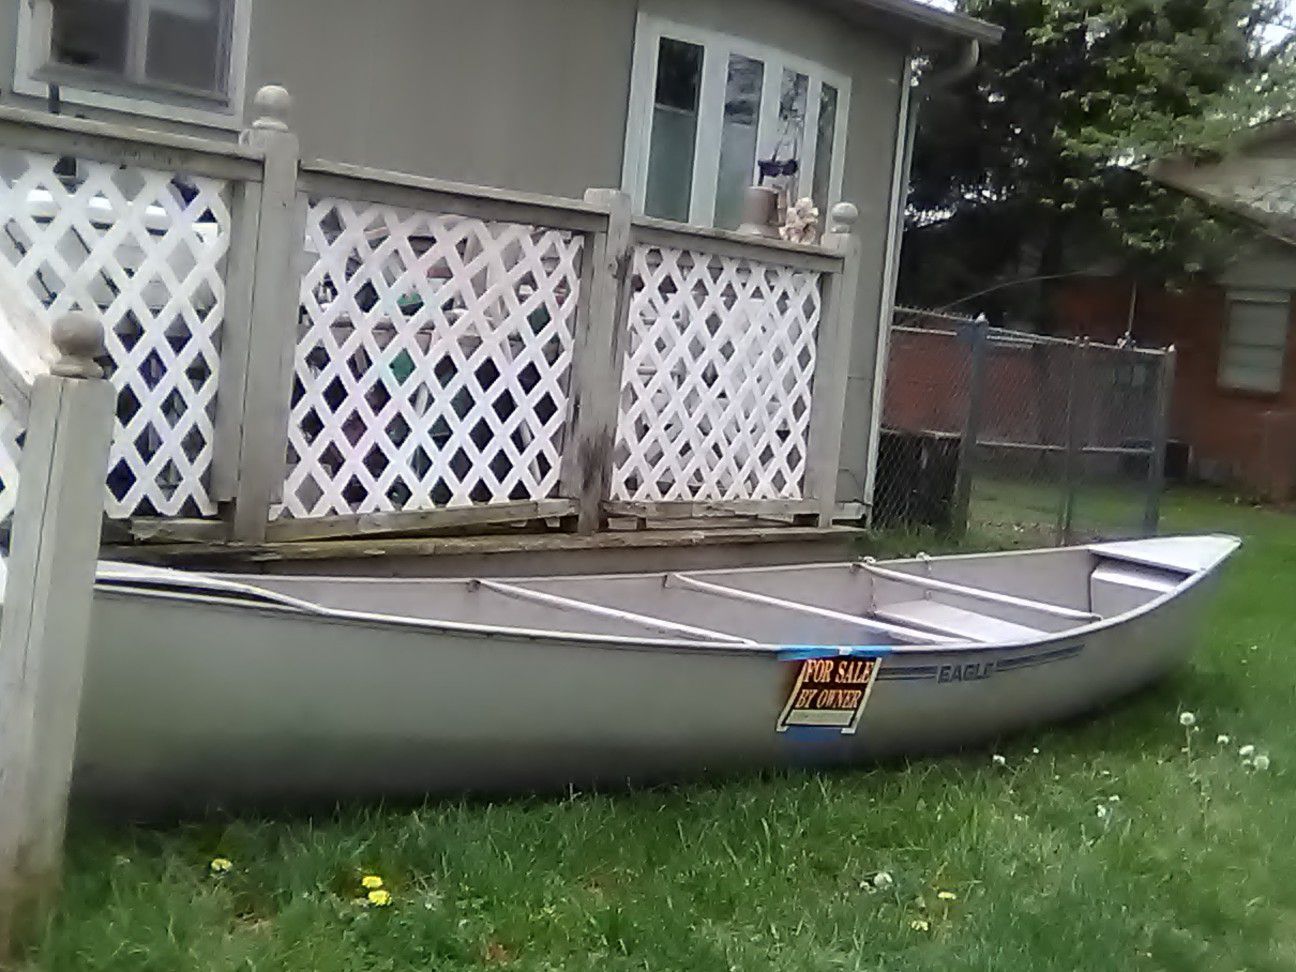 Grumman 17ft canoe